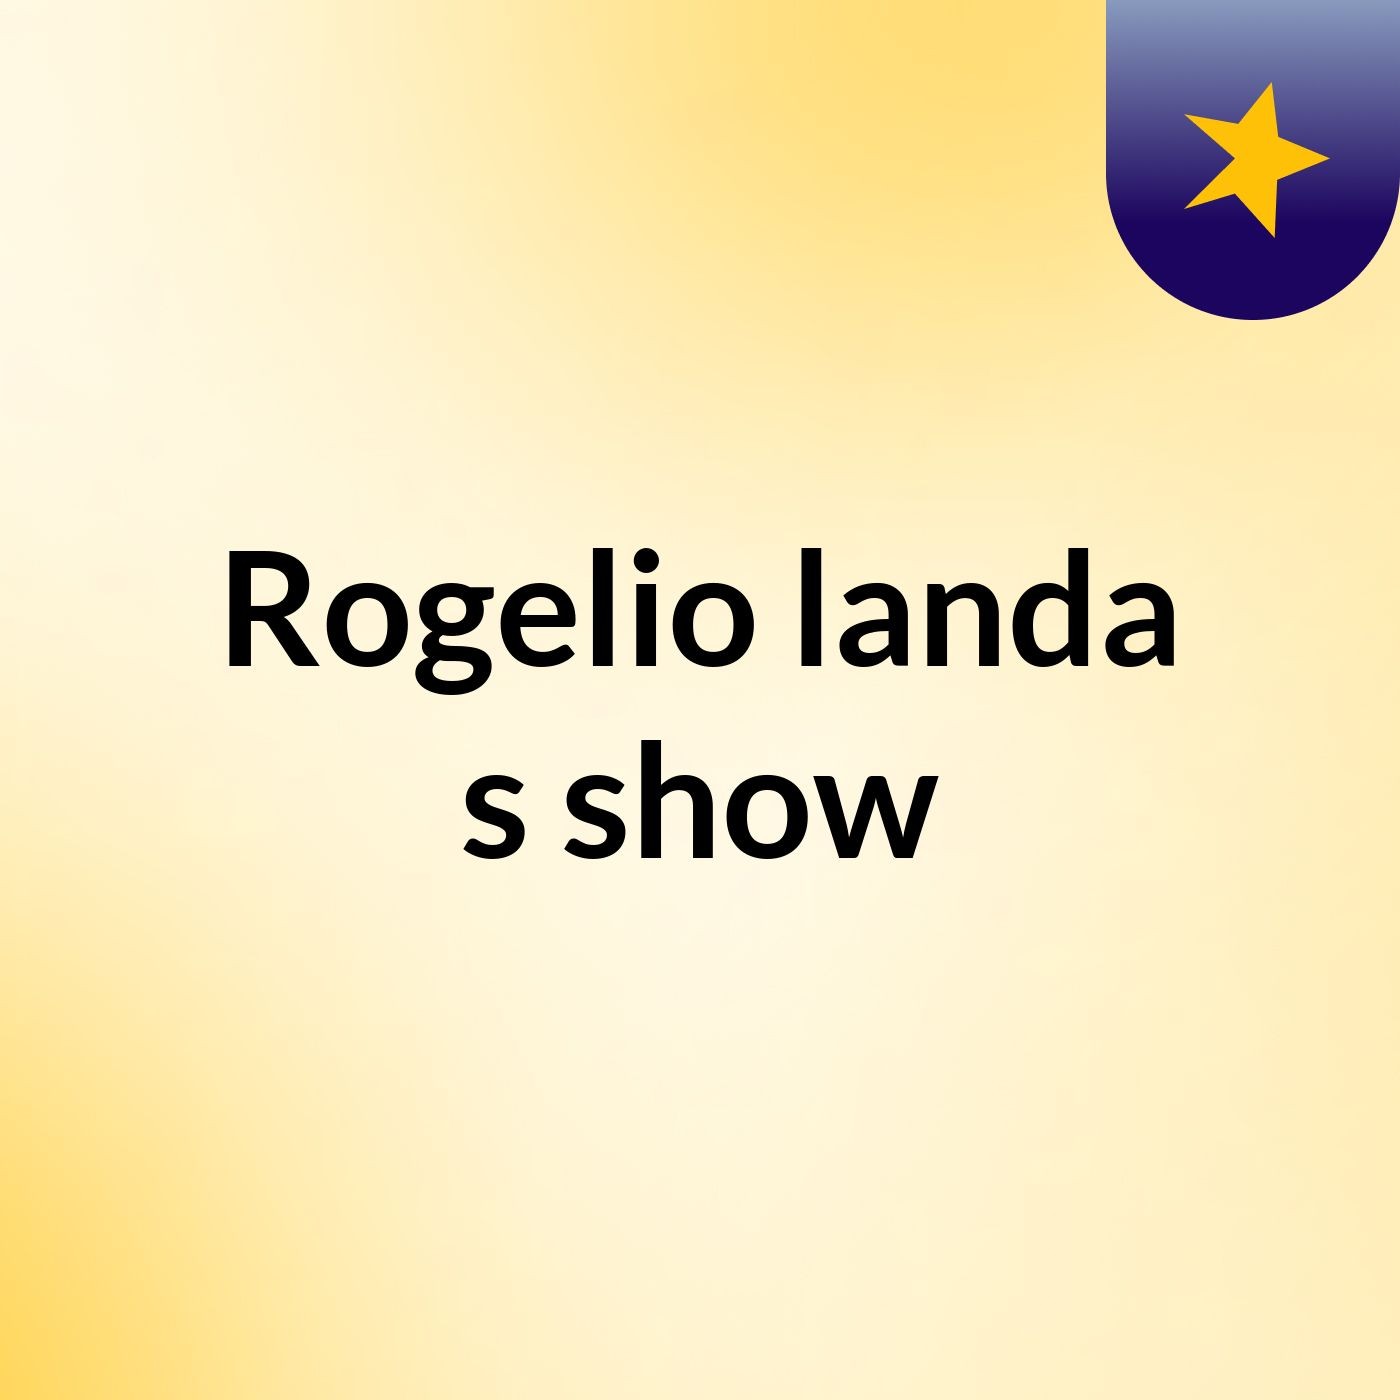 Rogelio landa's show